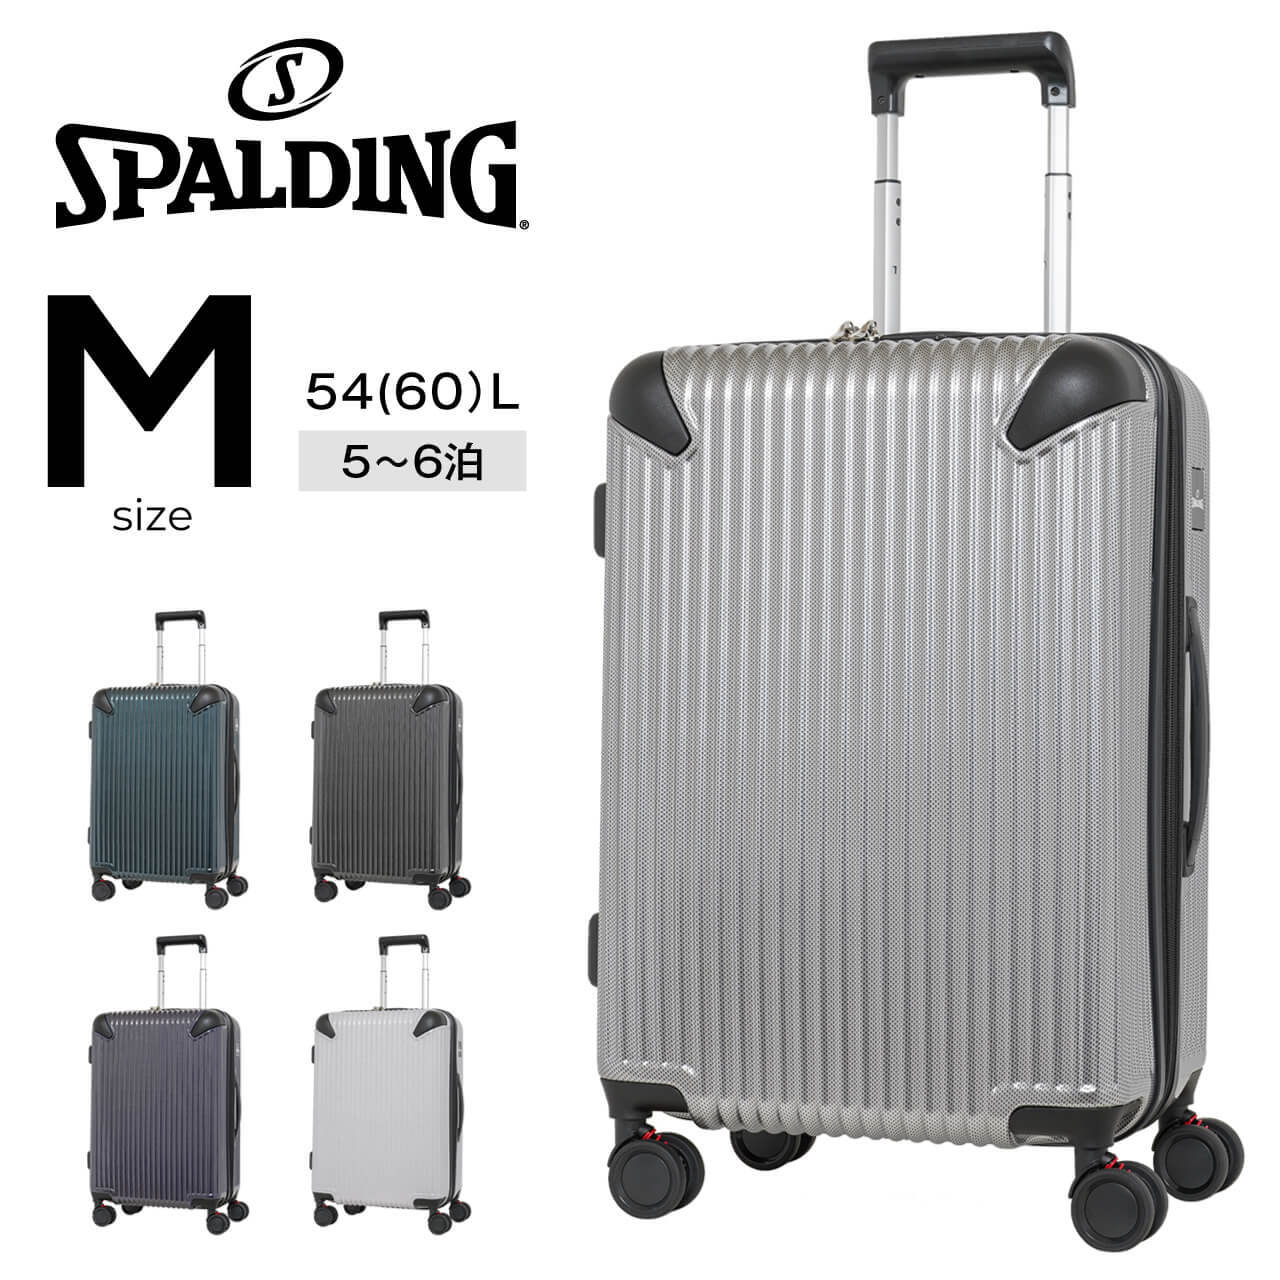 SPALDING スーツケース Mサイズ サスペンション付き キャリーケース